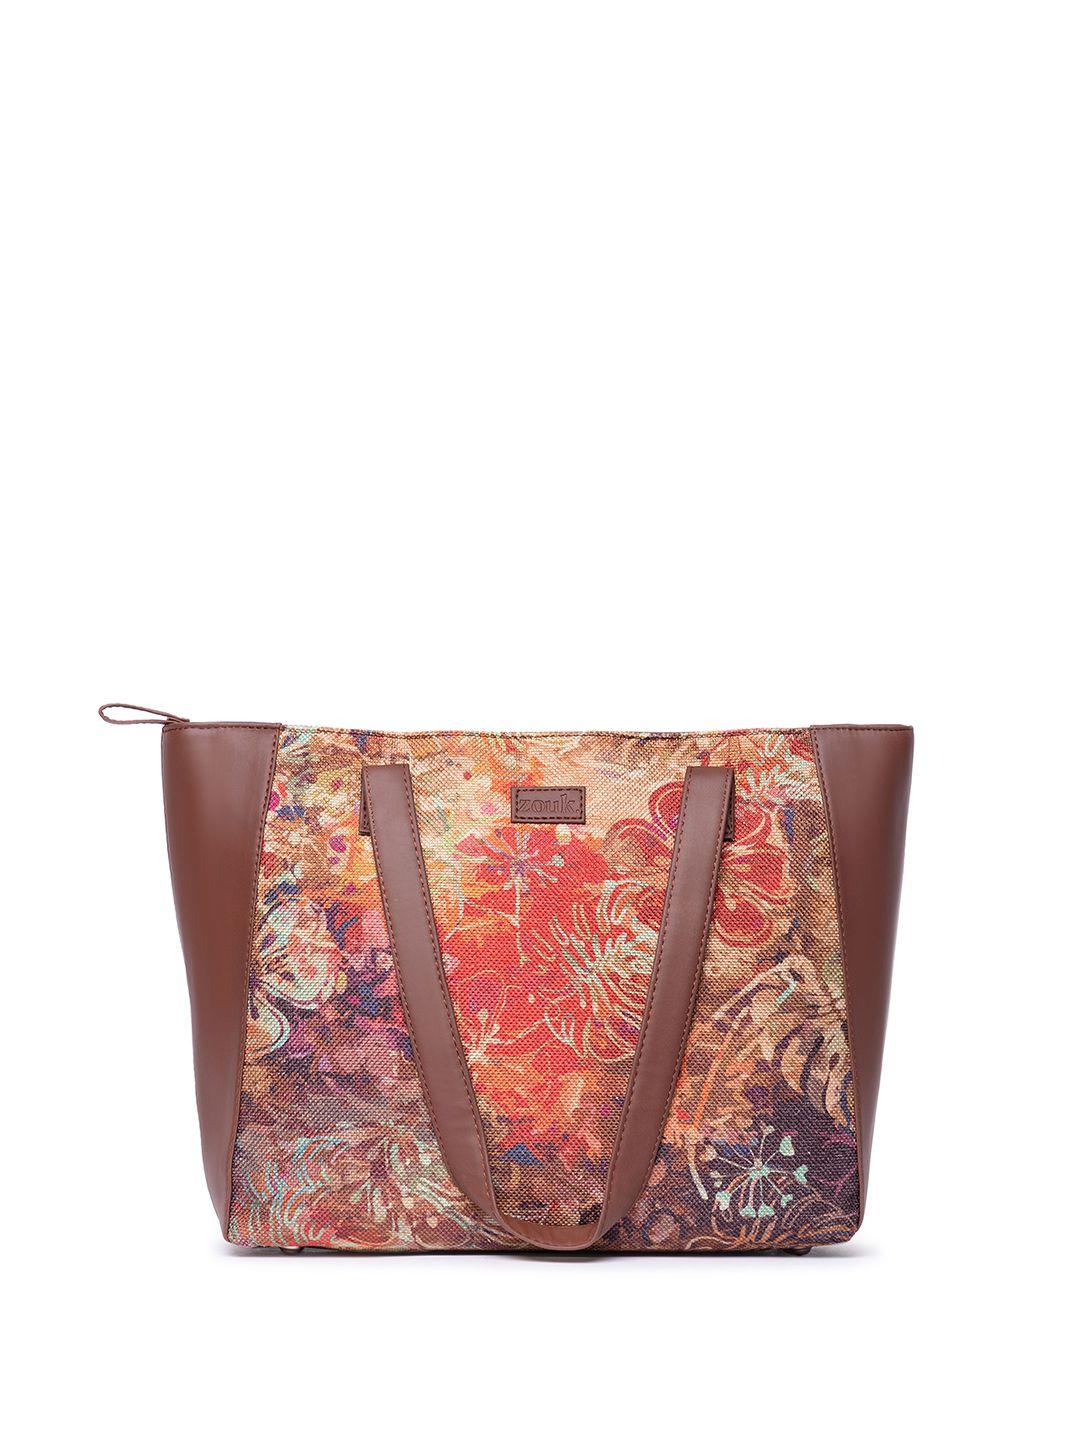 zouk floral printed structured jute shoulder bag